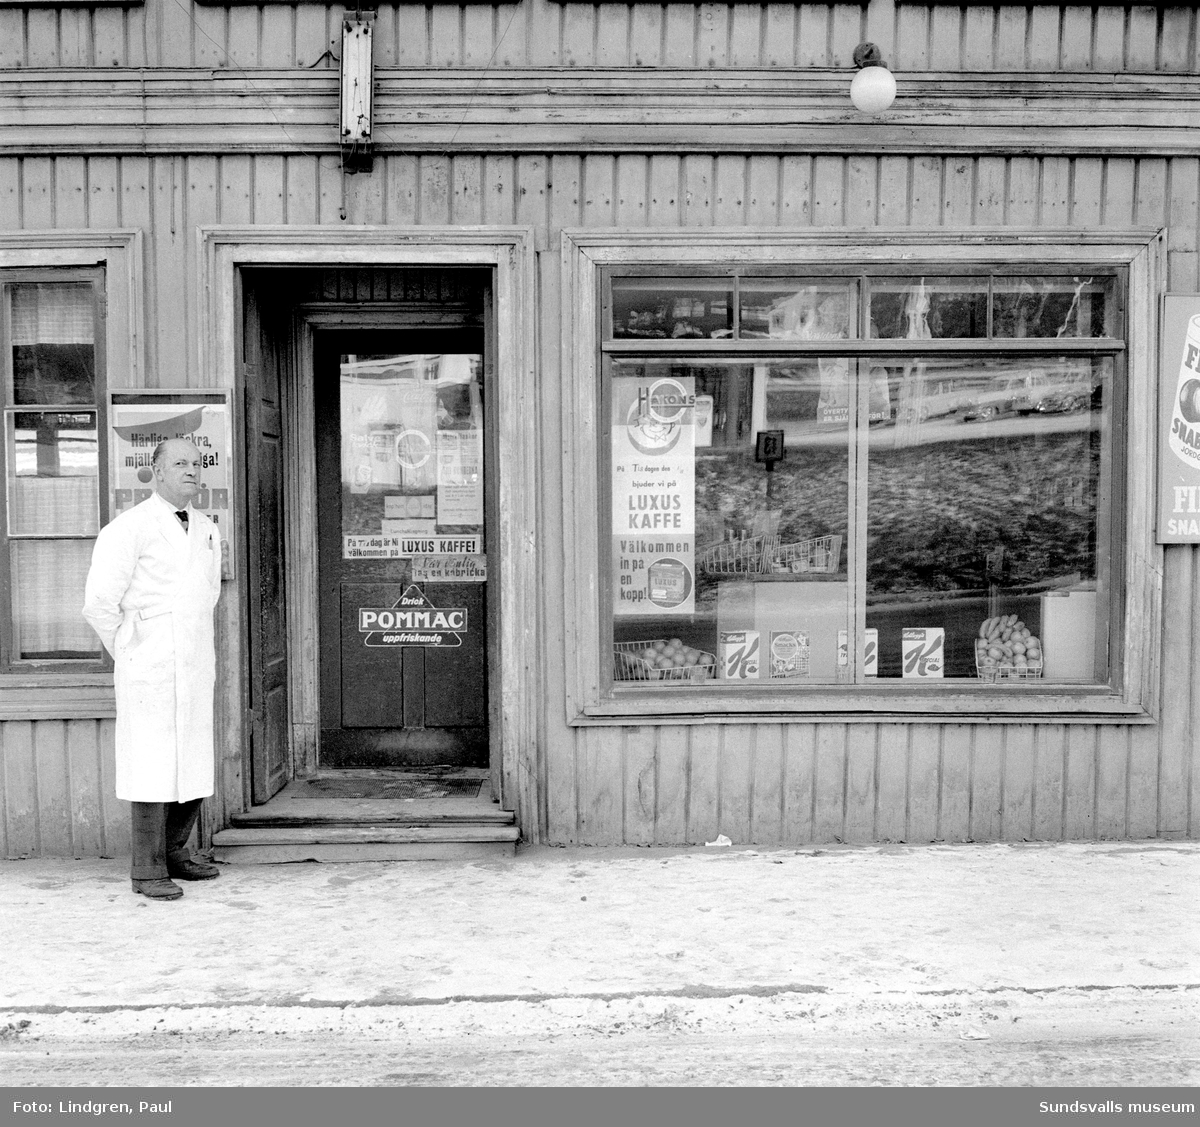 Livsmedelsbutik på Norrmalmsgatan 39. Här står butiksägaren Nils Olsson utanför butiken som först hans far A G Olsson och därefter han själv drev från 1920 fram till 1962. Bild 2 visar Nils Olsson vid kassaapparaten inne i butiken.